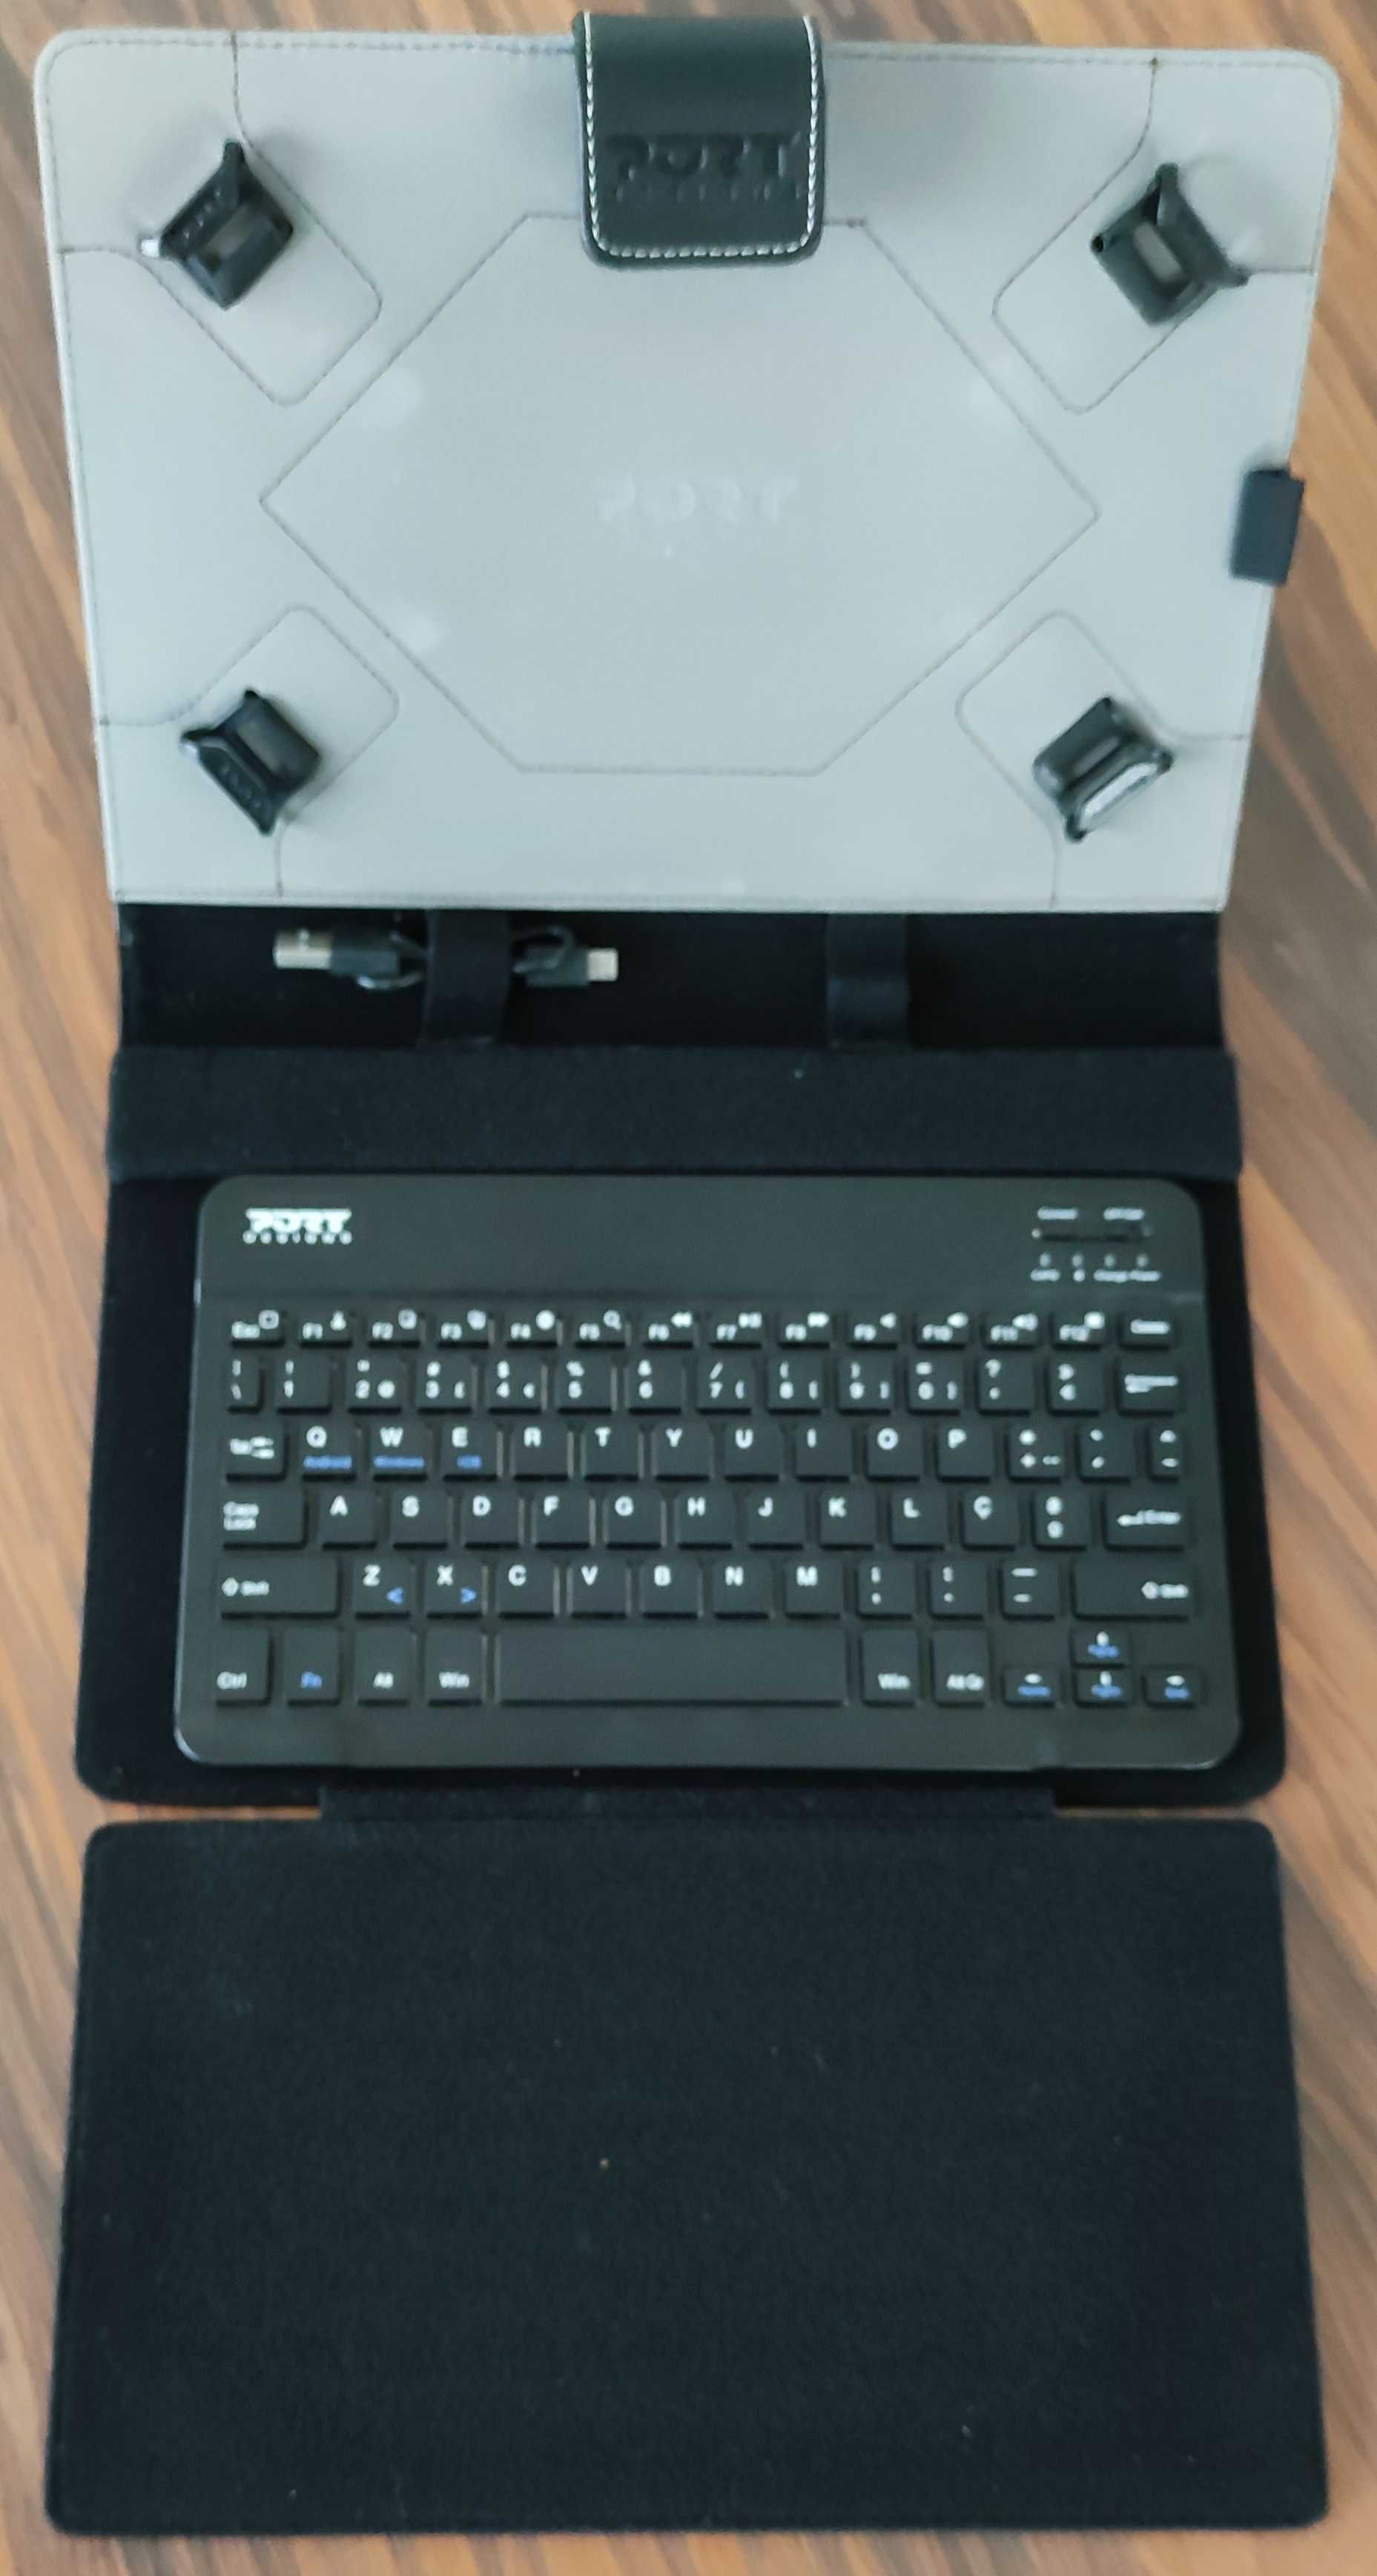 Capa universal para Tablet, com teclado Bluetooth incluído